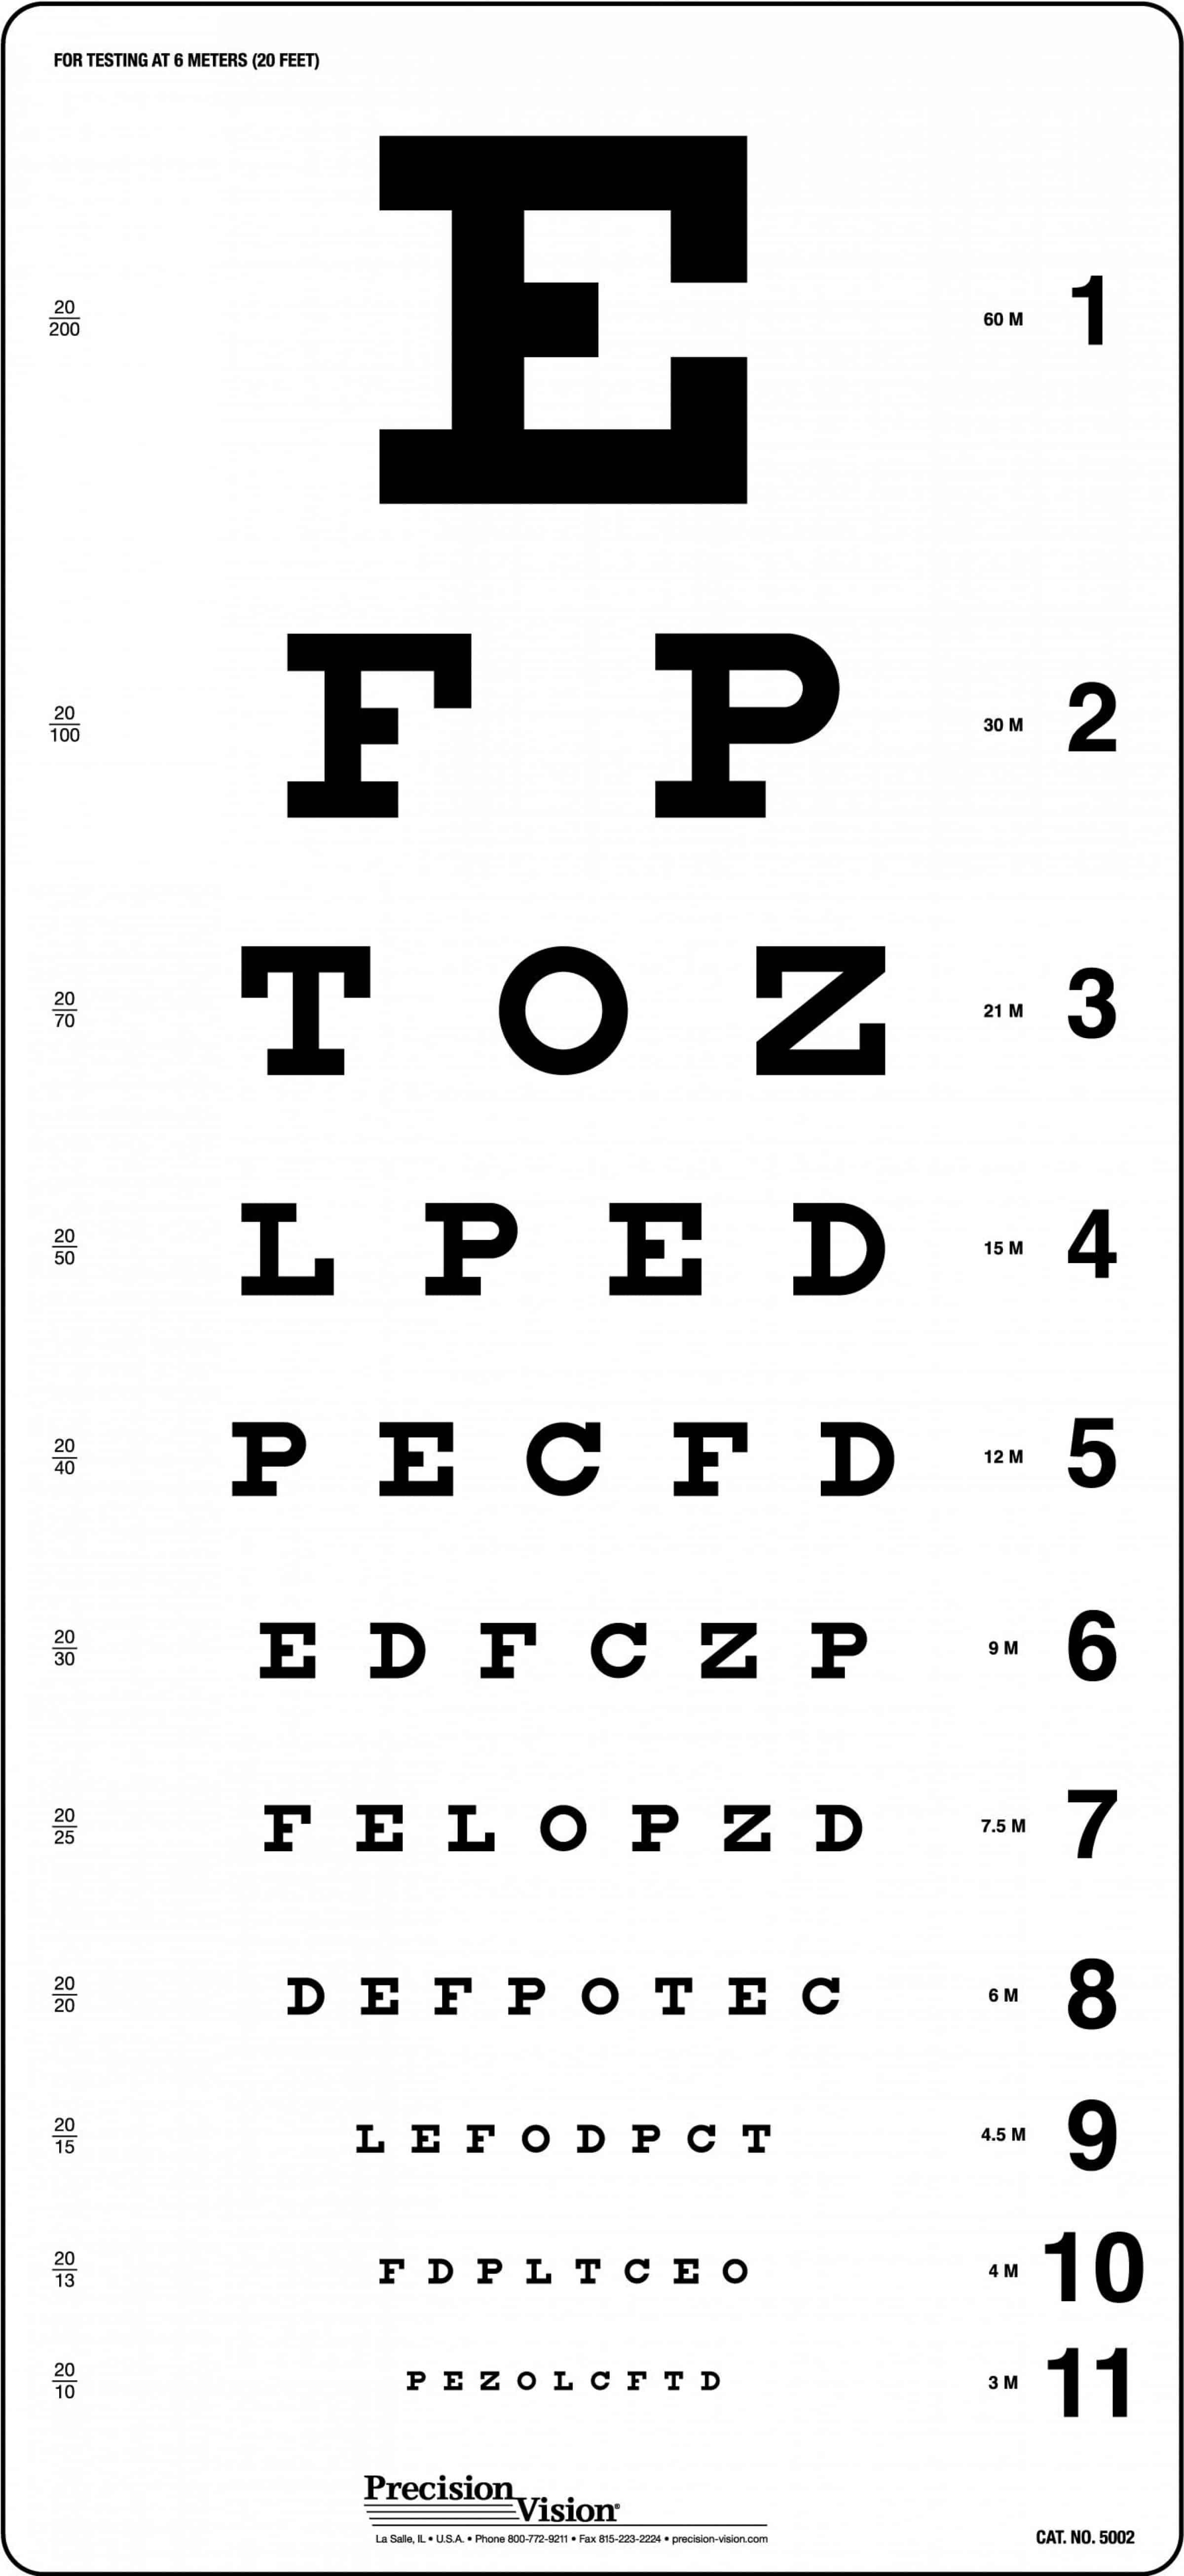 visual acuity testing snellen chart mdcalc - snellen eye test charts ...